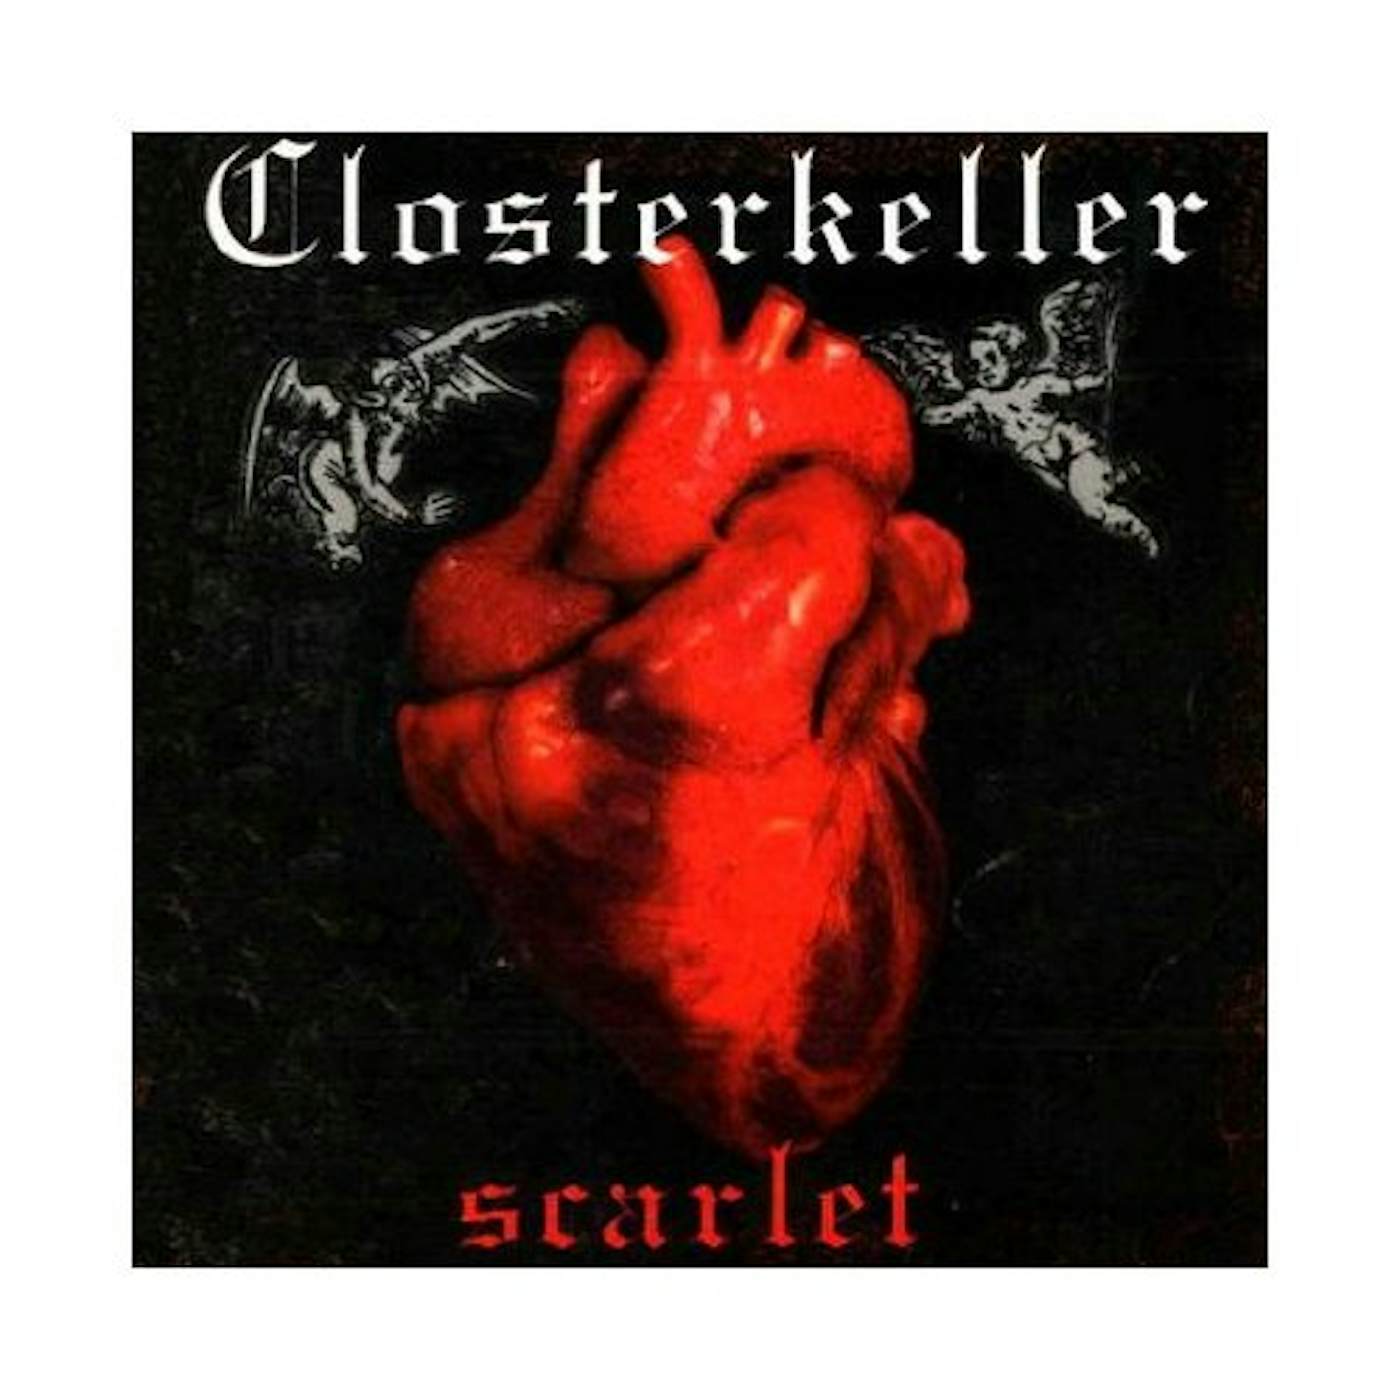 Closterkeller SCARLET CD